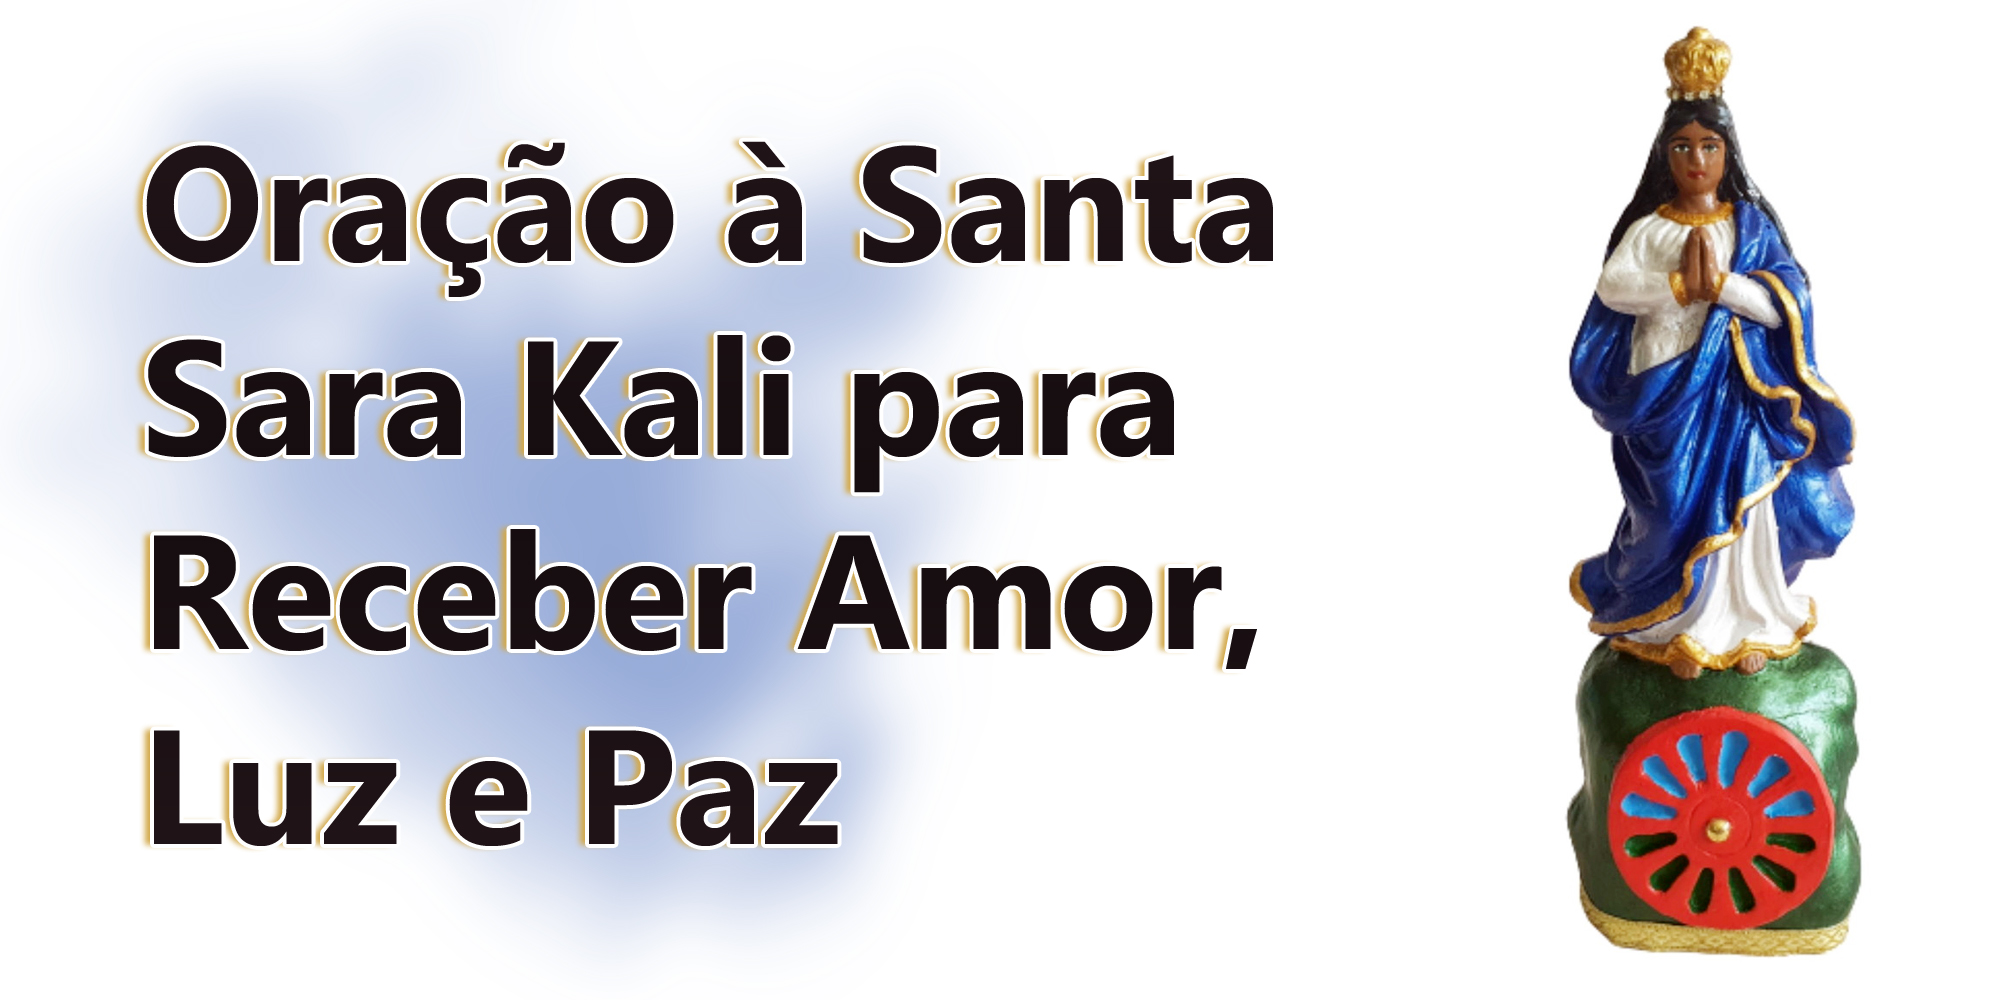 Oração à Santa Sara Kali para Receber Amor, Luz e Paz